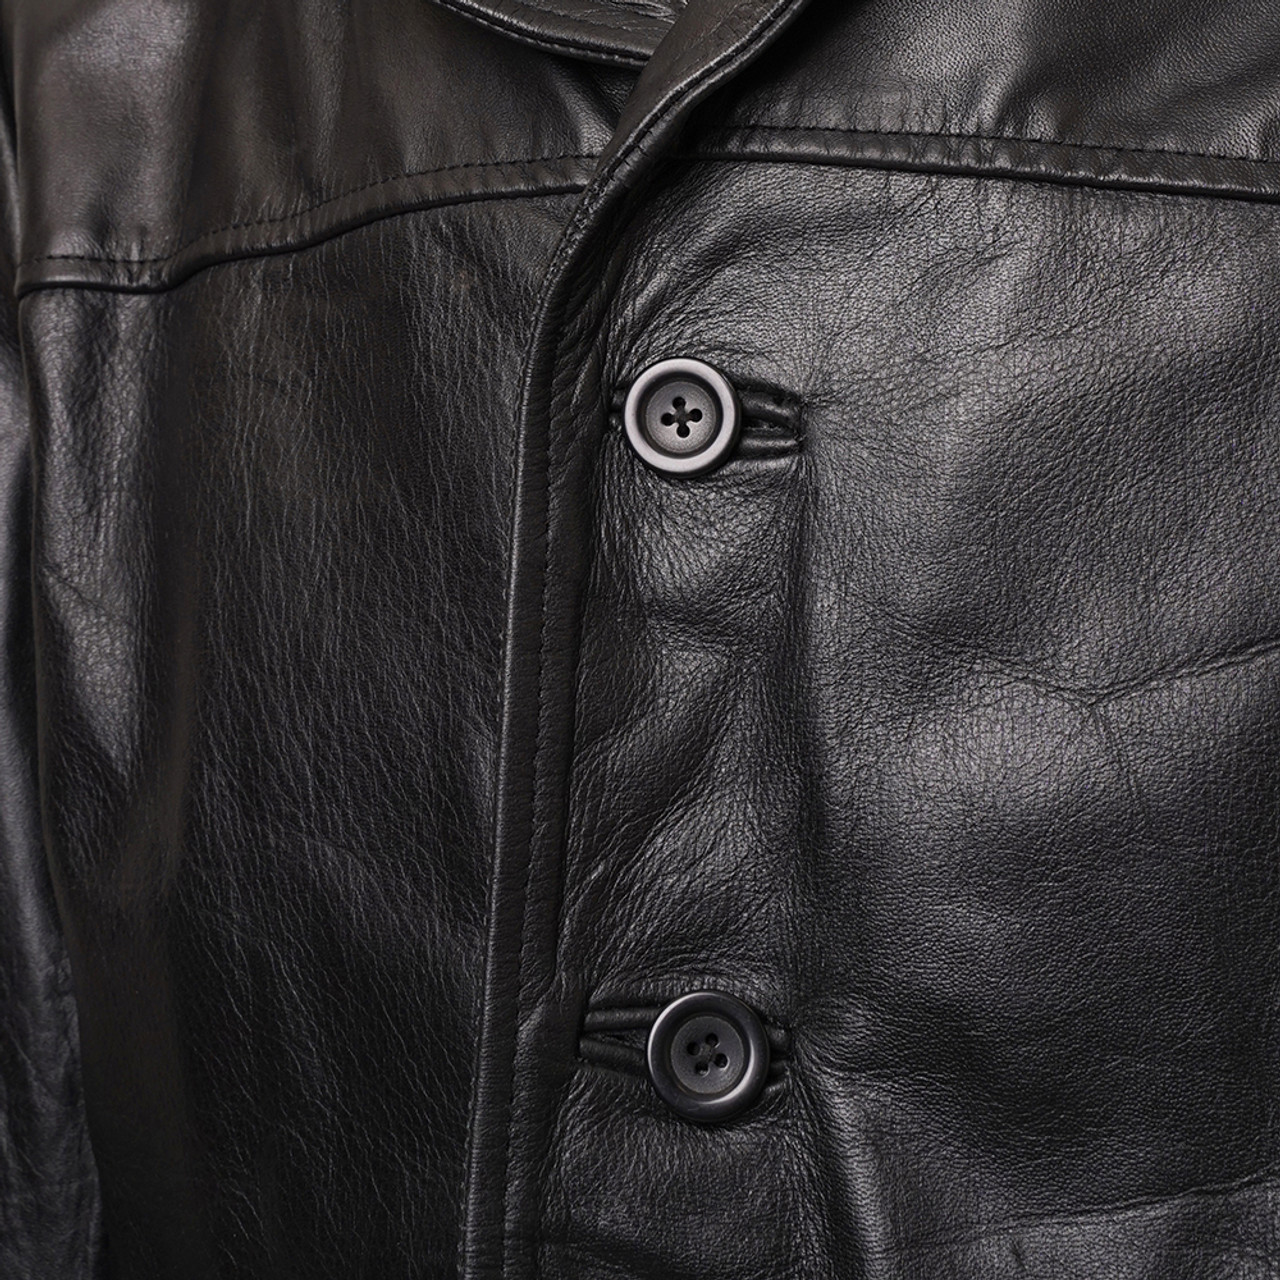 Denzel Washington Training Day Leather Jacket | Feather Skin